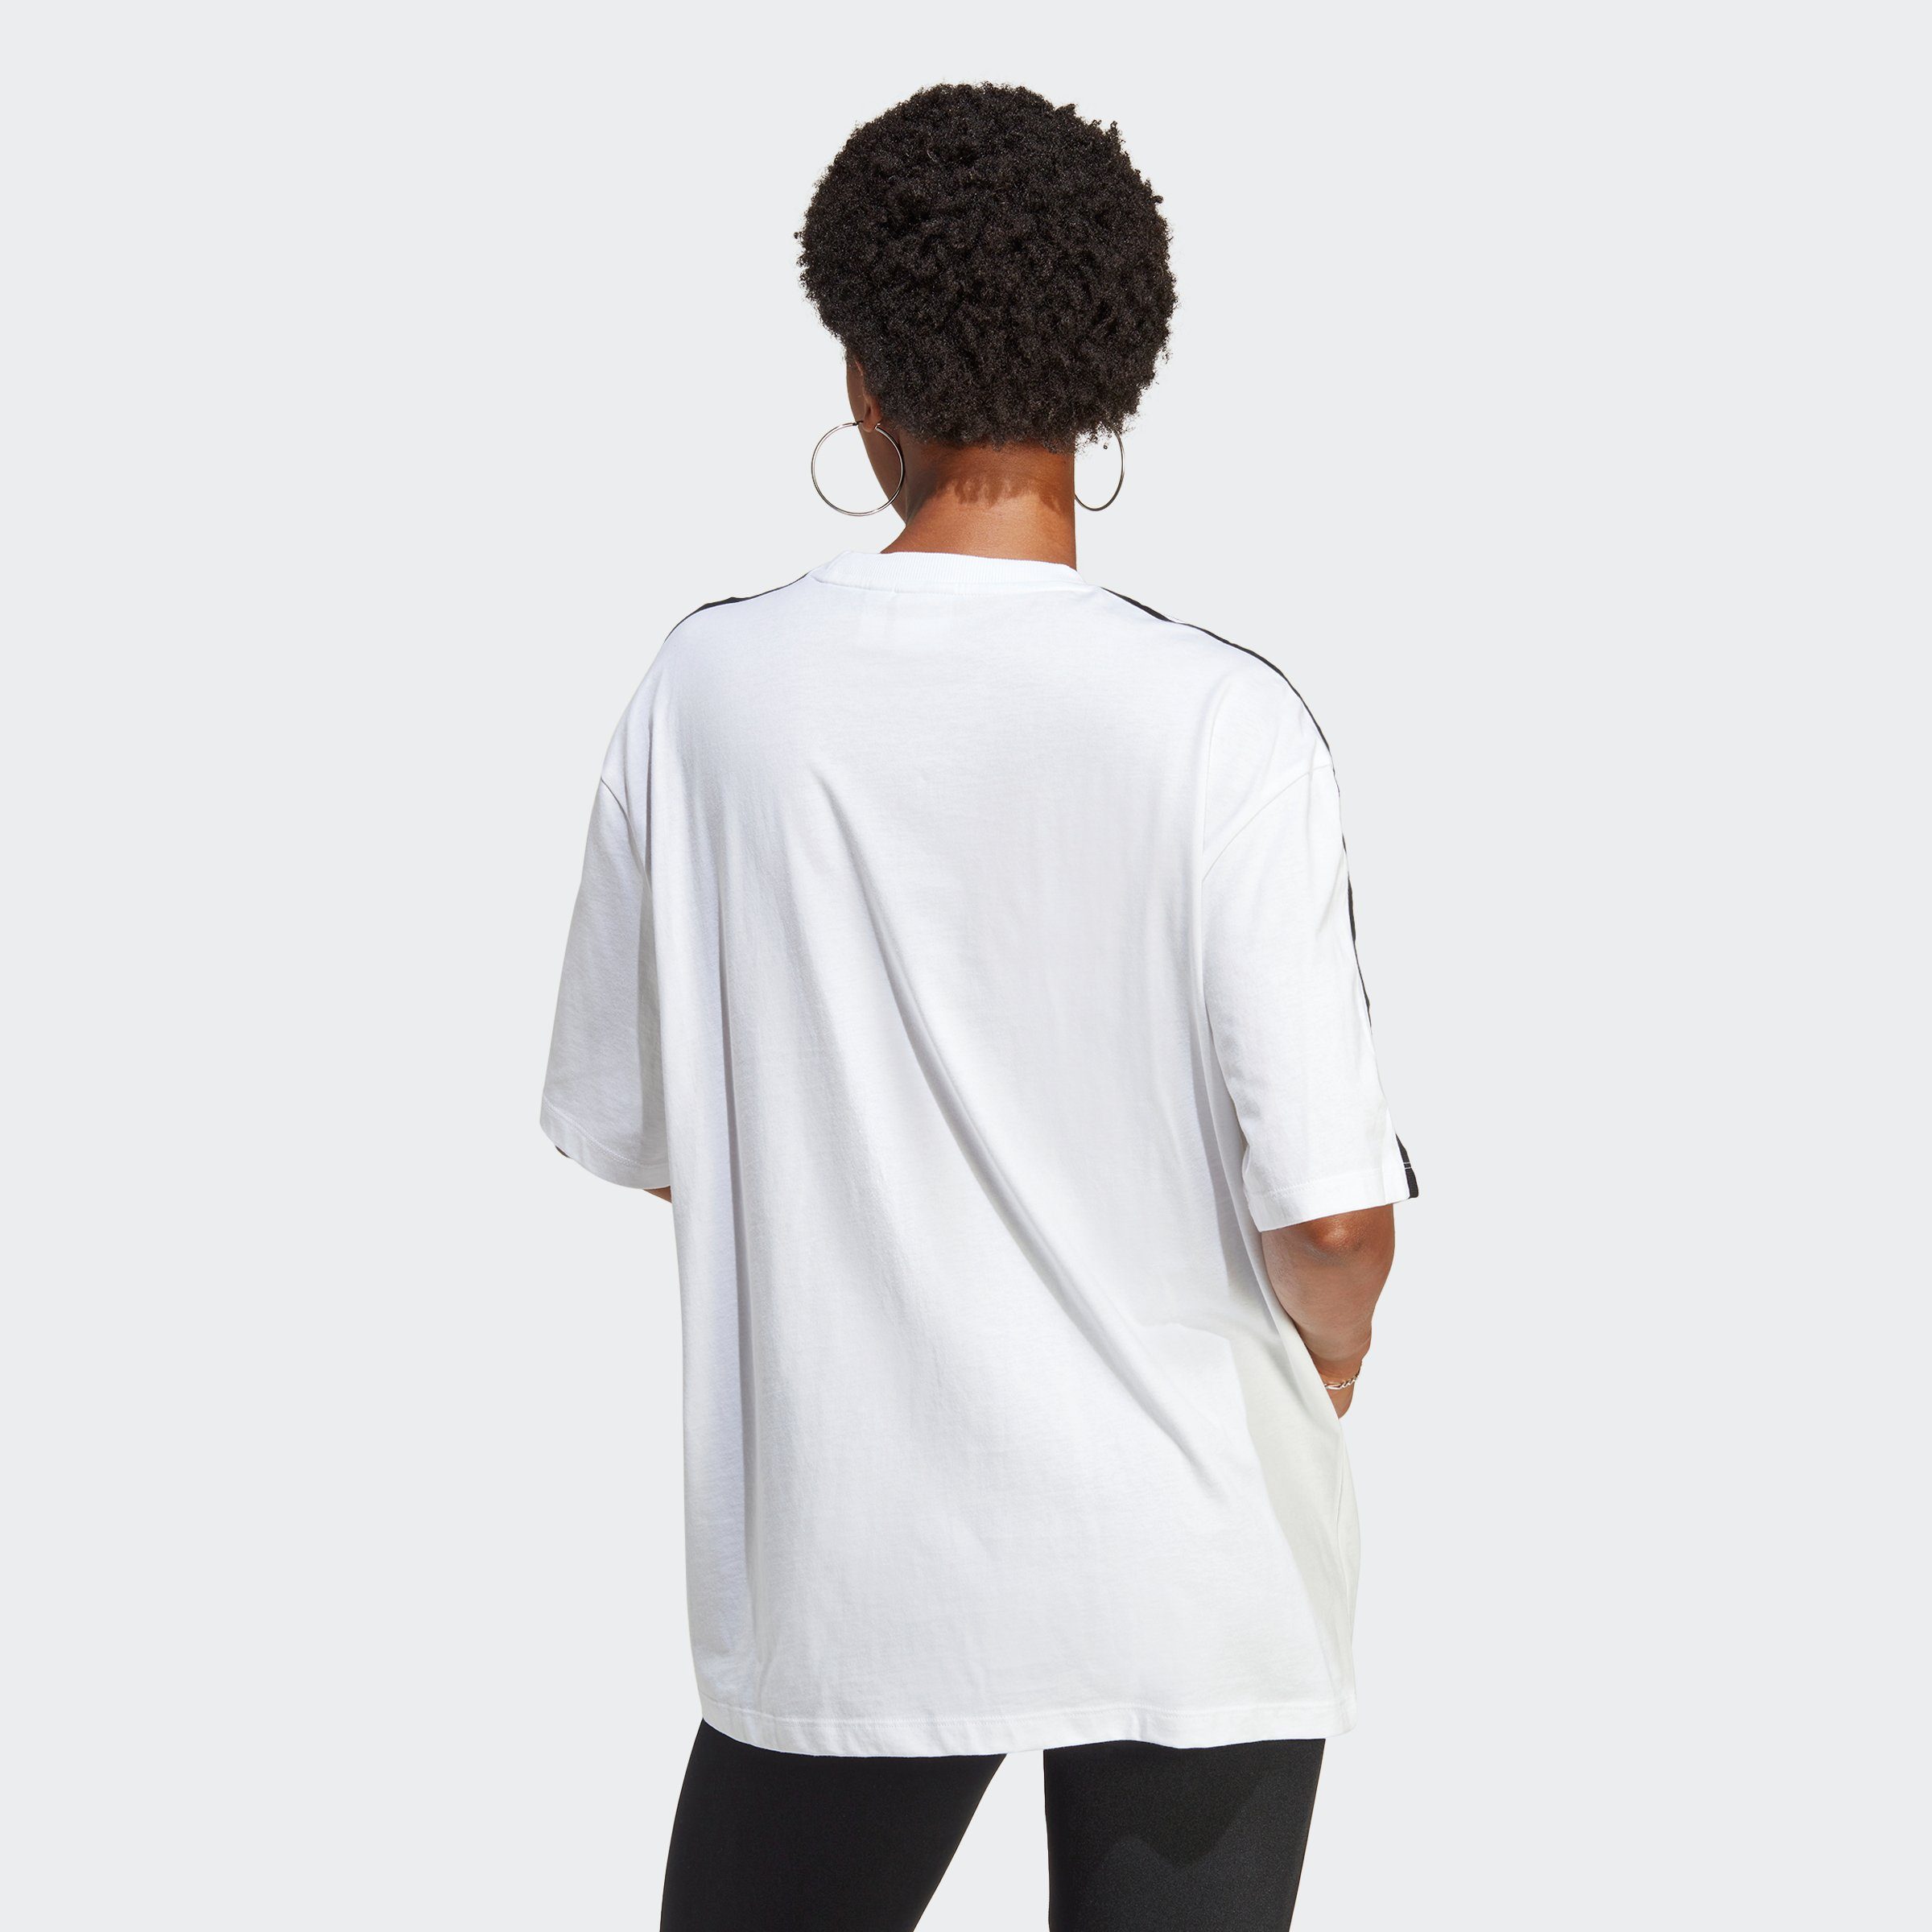 ADICOLOR White OVERSIZED T-Shirt adidas Originals CLASSICS